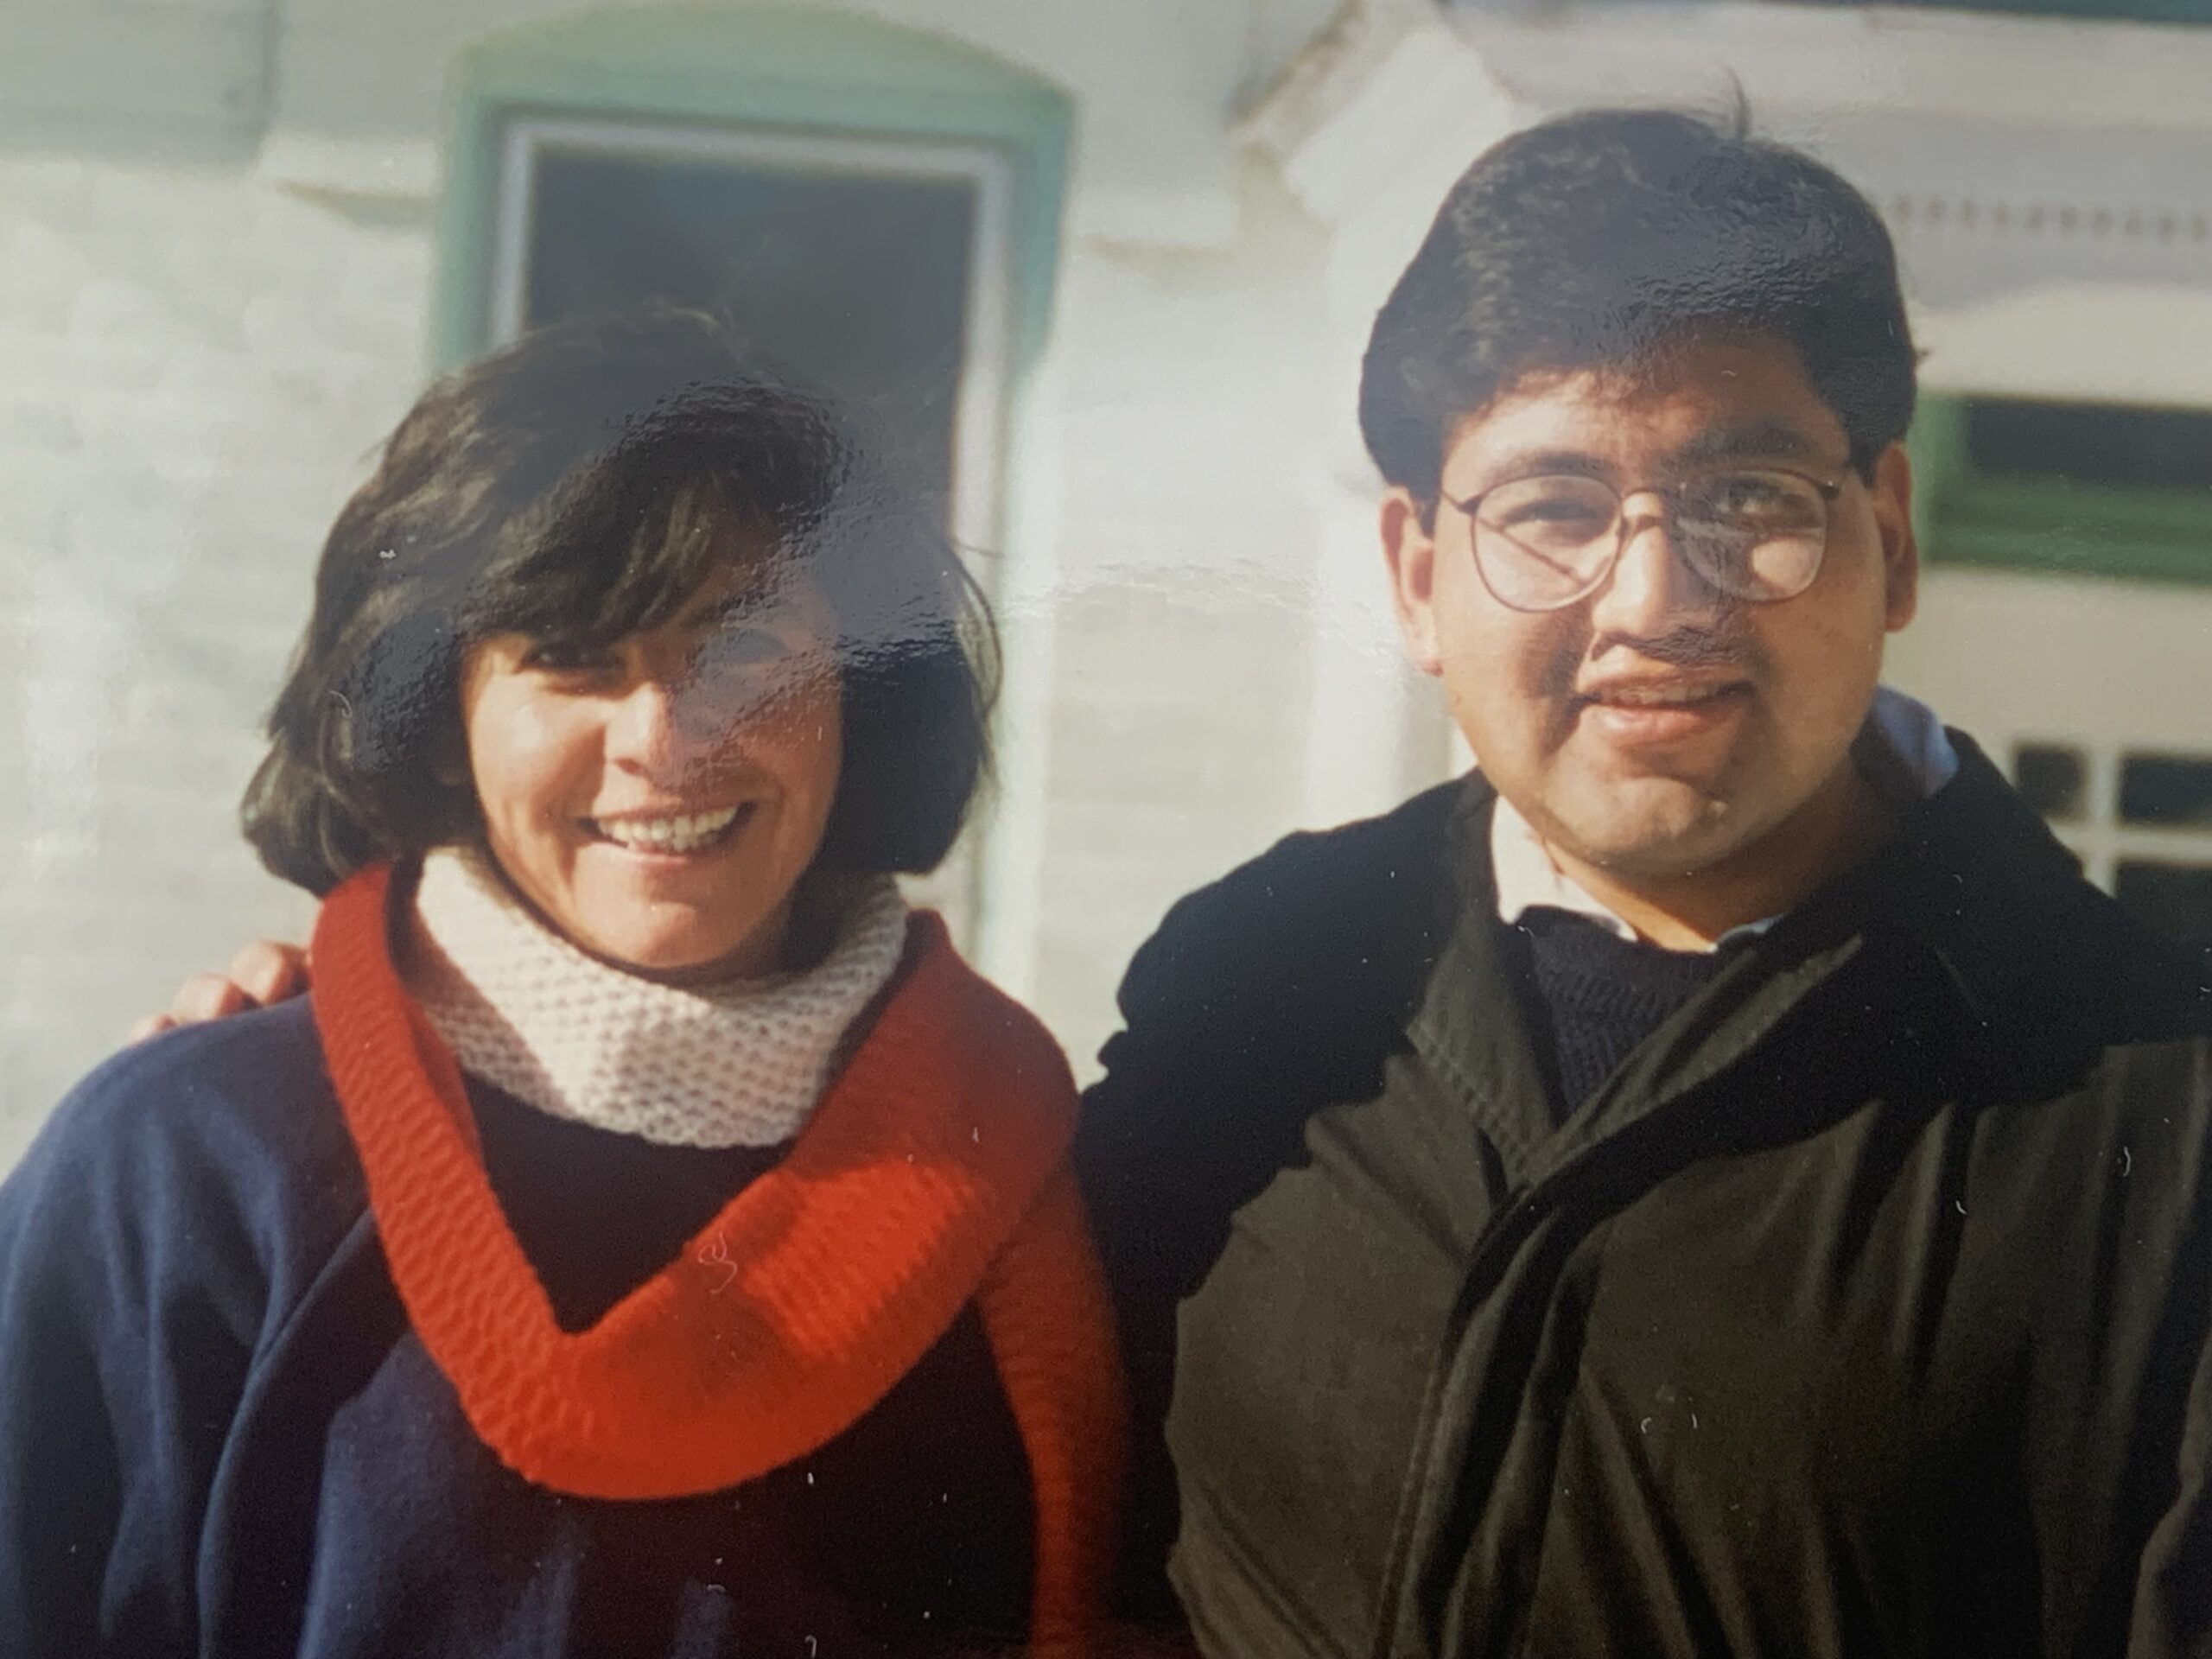 Bilingual Mission Team, January 1996 - Equipo misionero bilingüe, enero de 1996